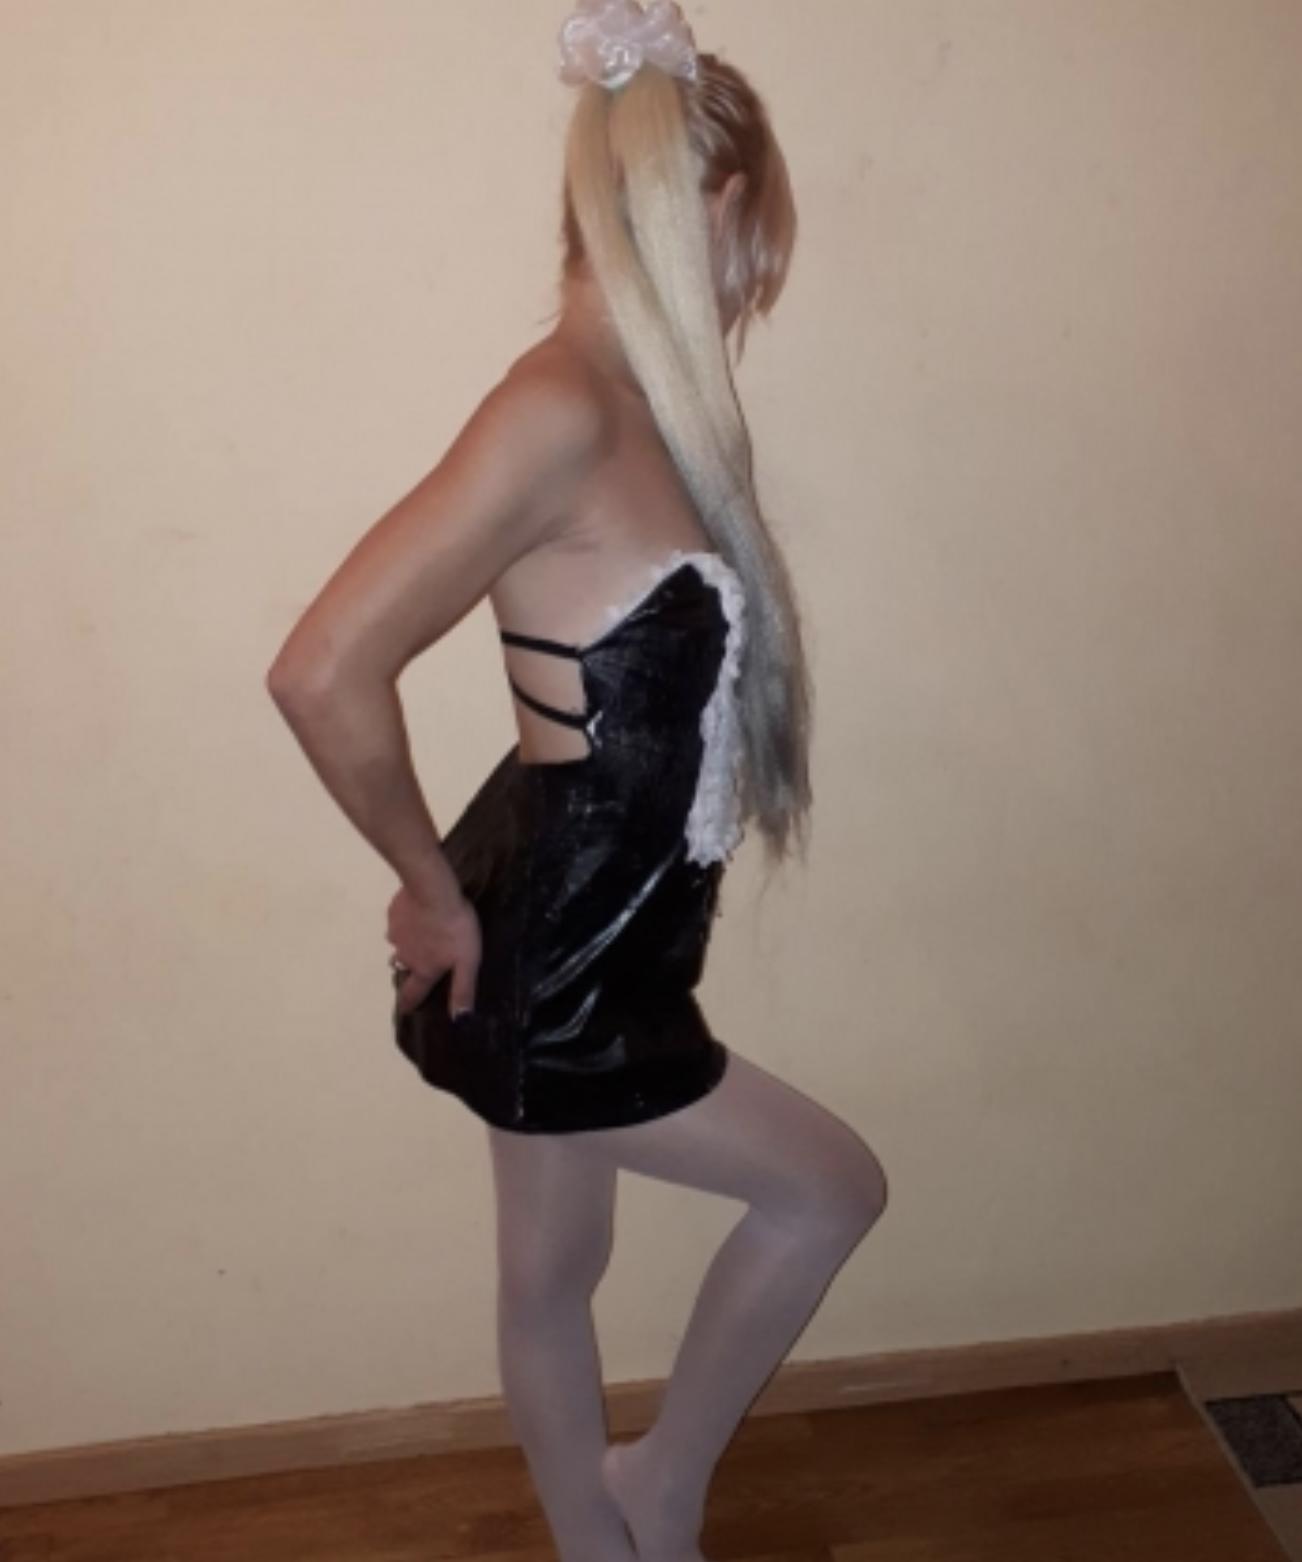 Проститутка Анна, фото 1, тел: 0631561694. В центре города - Киев